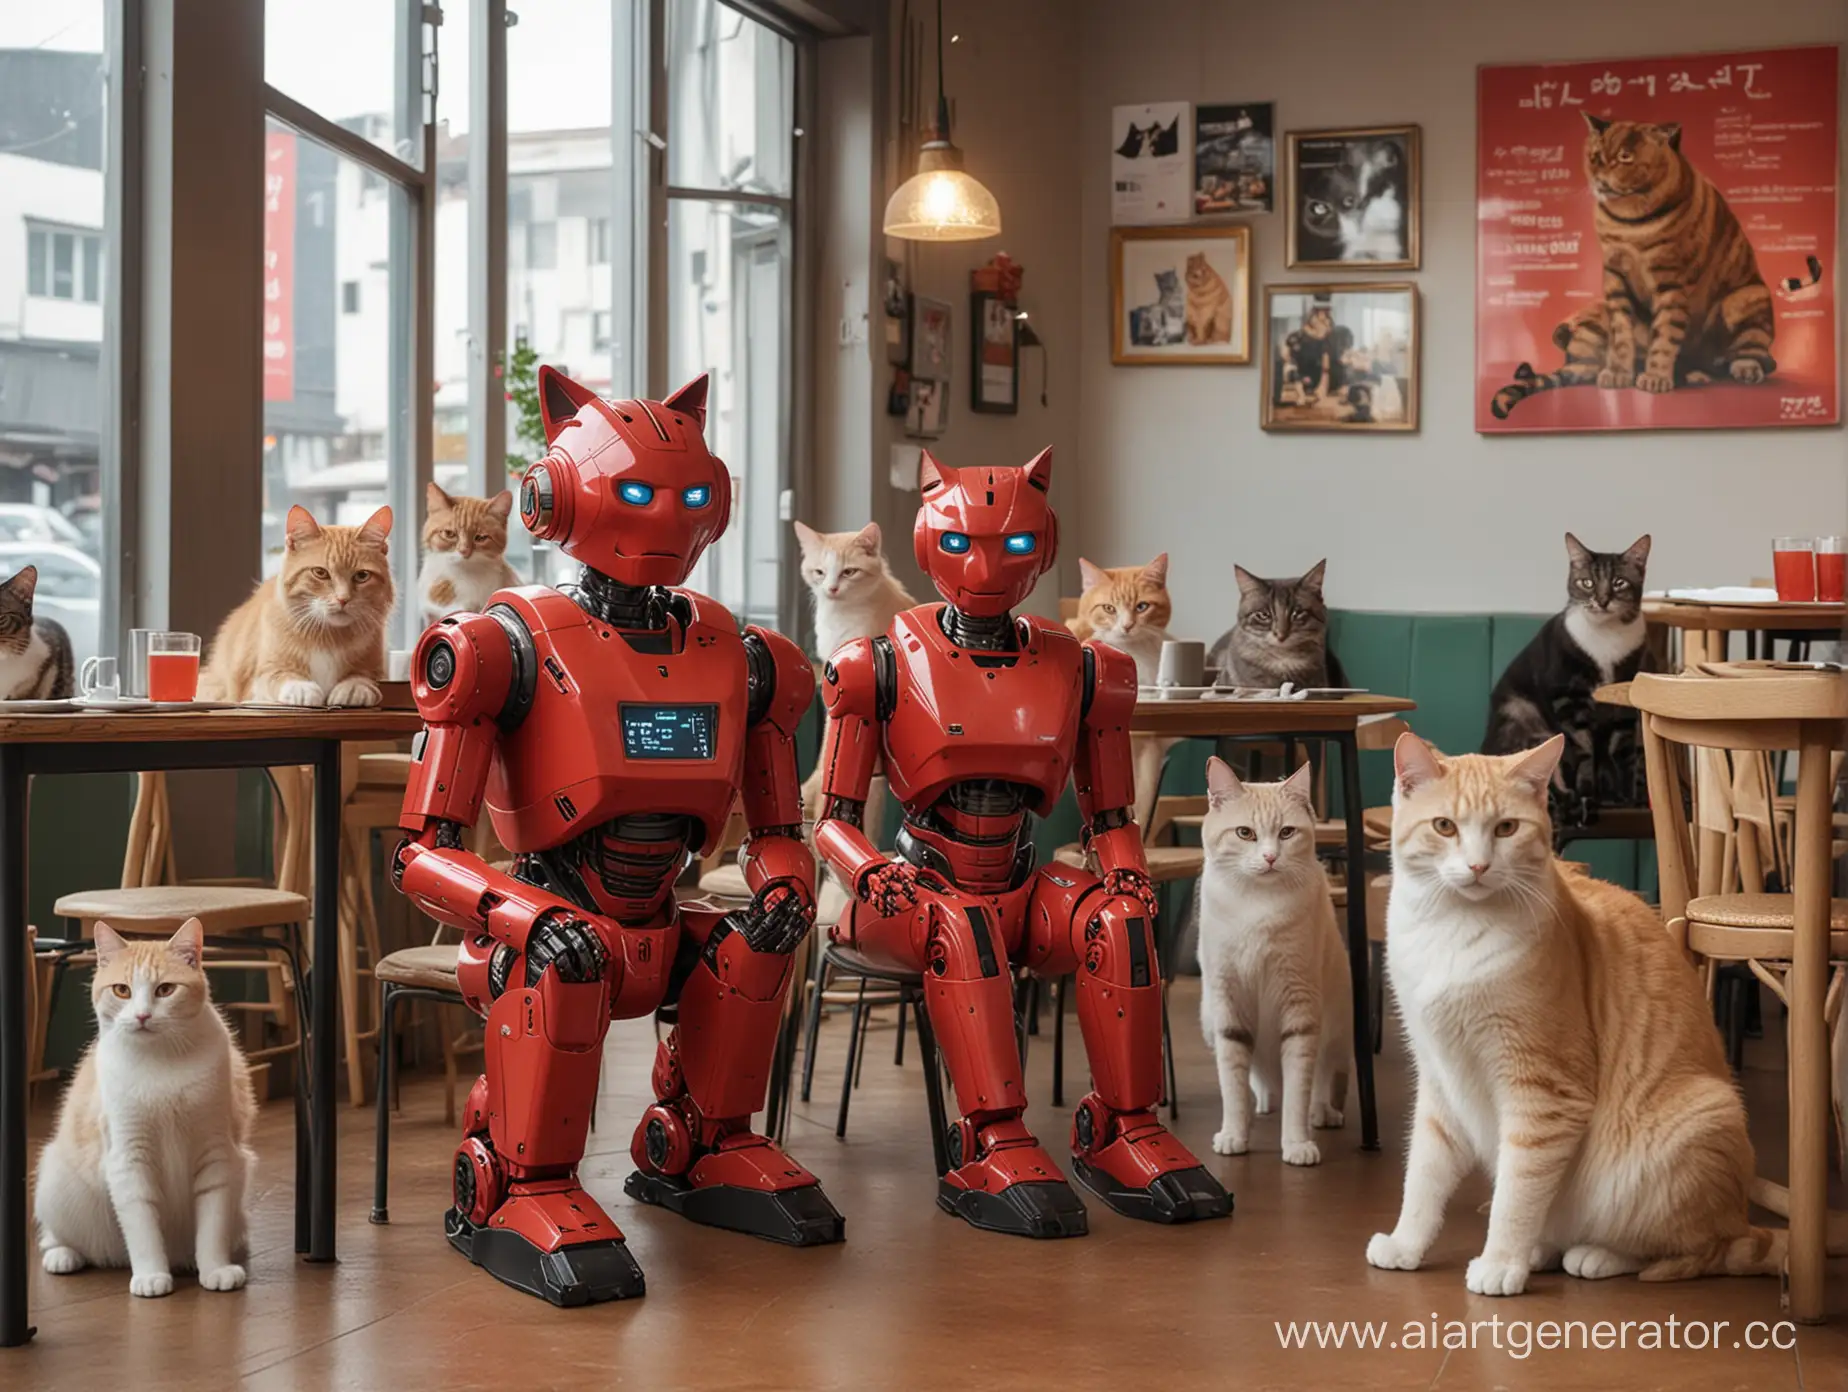 Красный робот сидит в окружении разных котов и кошек в кафе